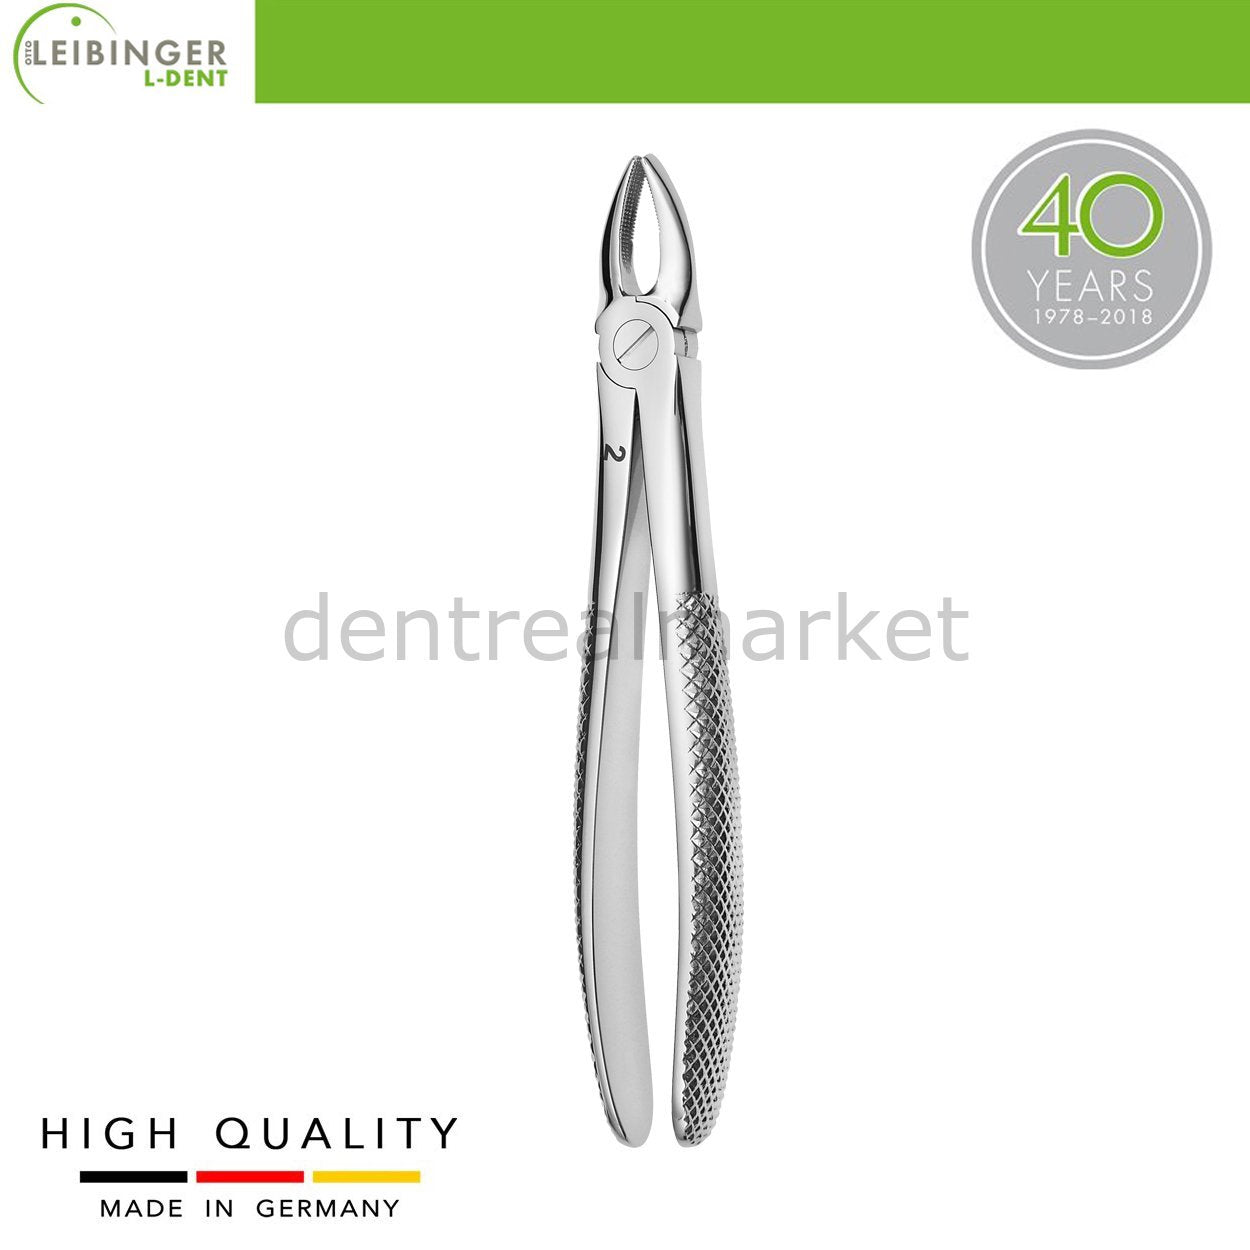 DentrealStore - Leibinger Adult Extracting Forceps 2 - Forceps for Upper Premolar Forceps